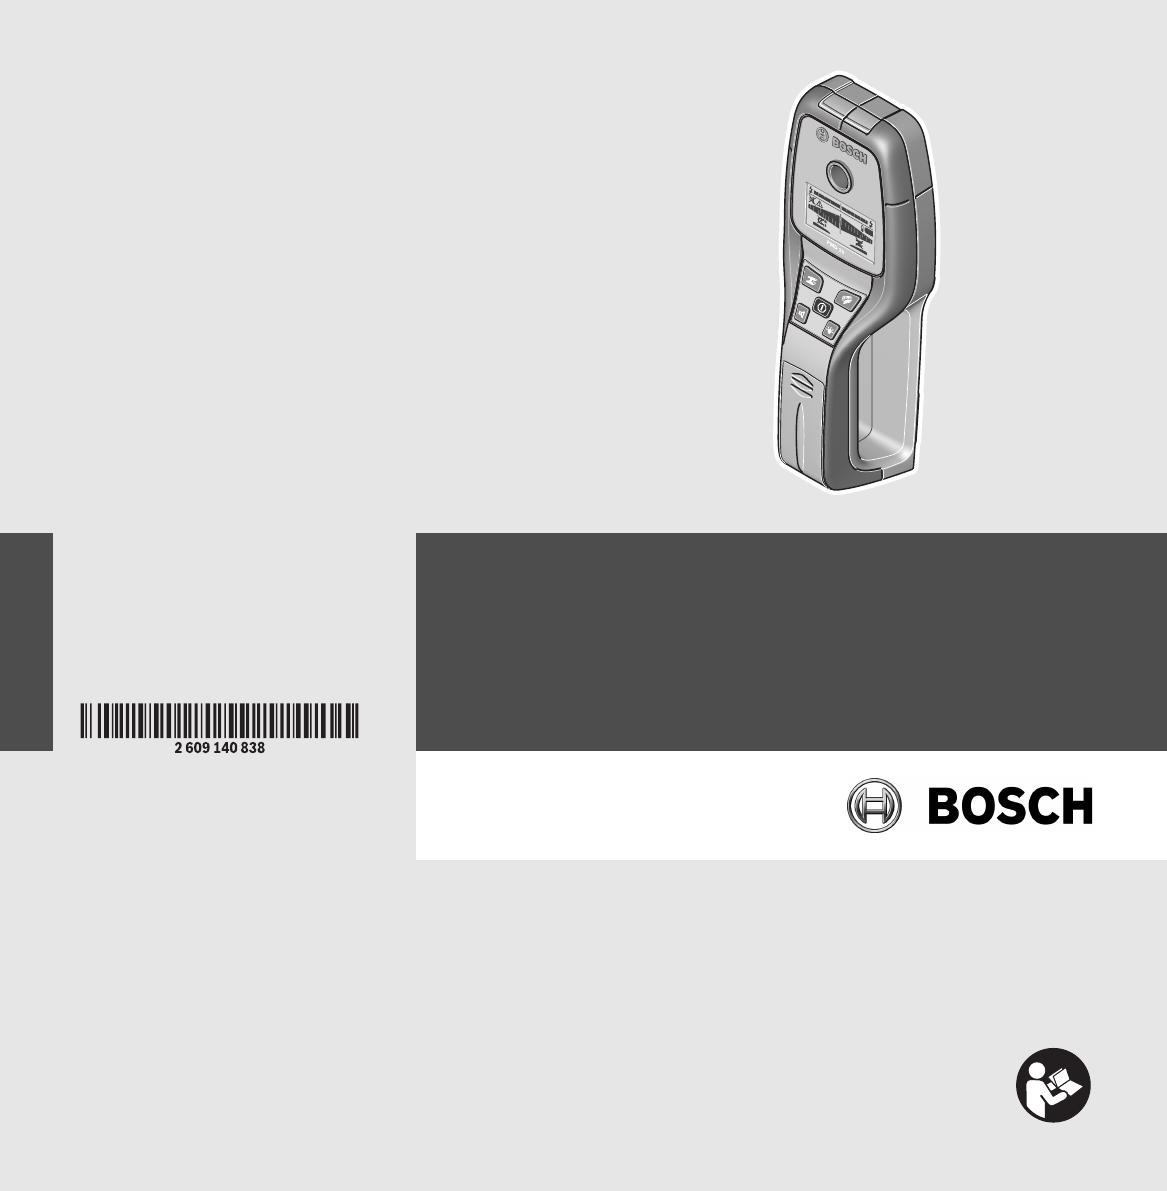 Manual Bosch PMD 10 (page 1 of 300) (English, German, Dutch, Danish, Italian, Portuguese, Swedish, Turkish, Spanish, Norwegian, Finnish)